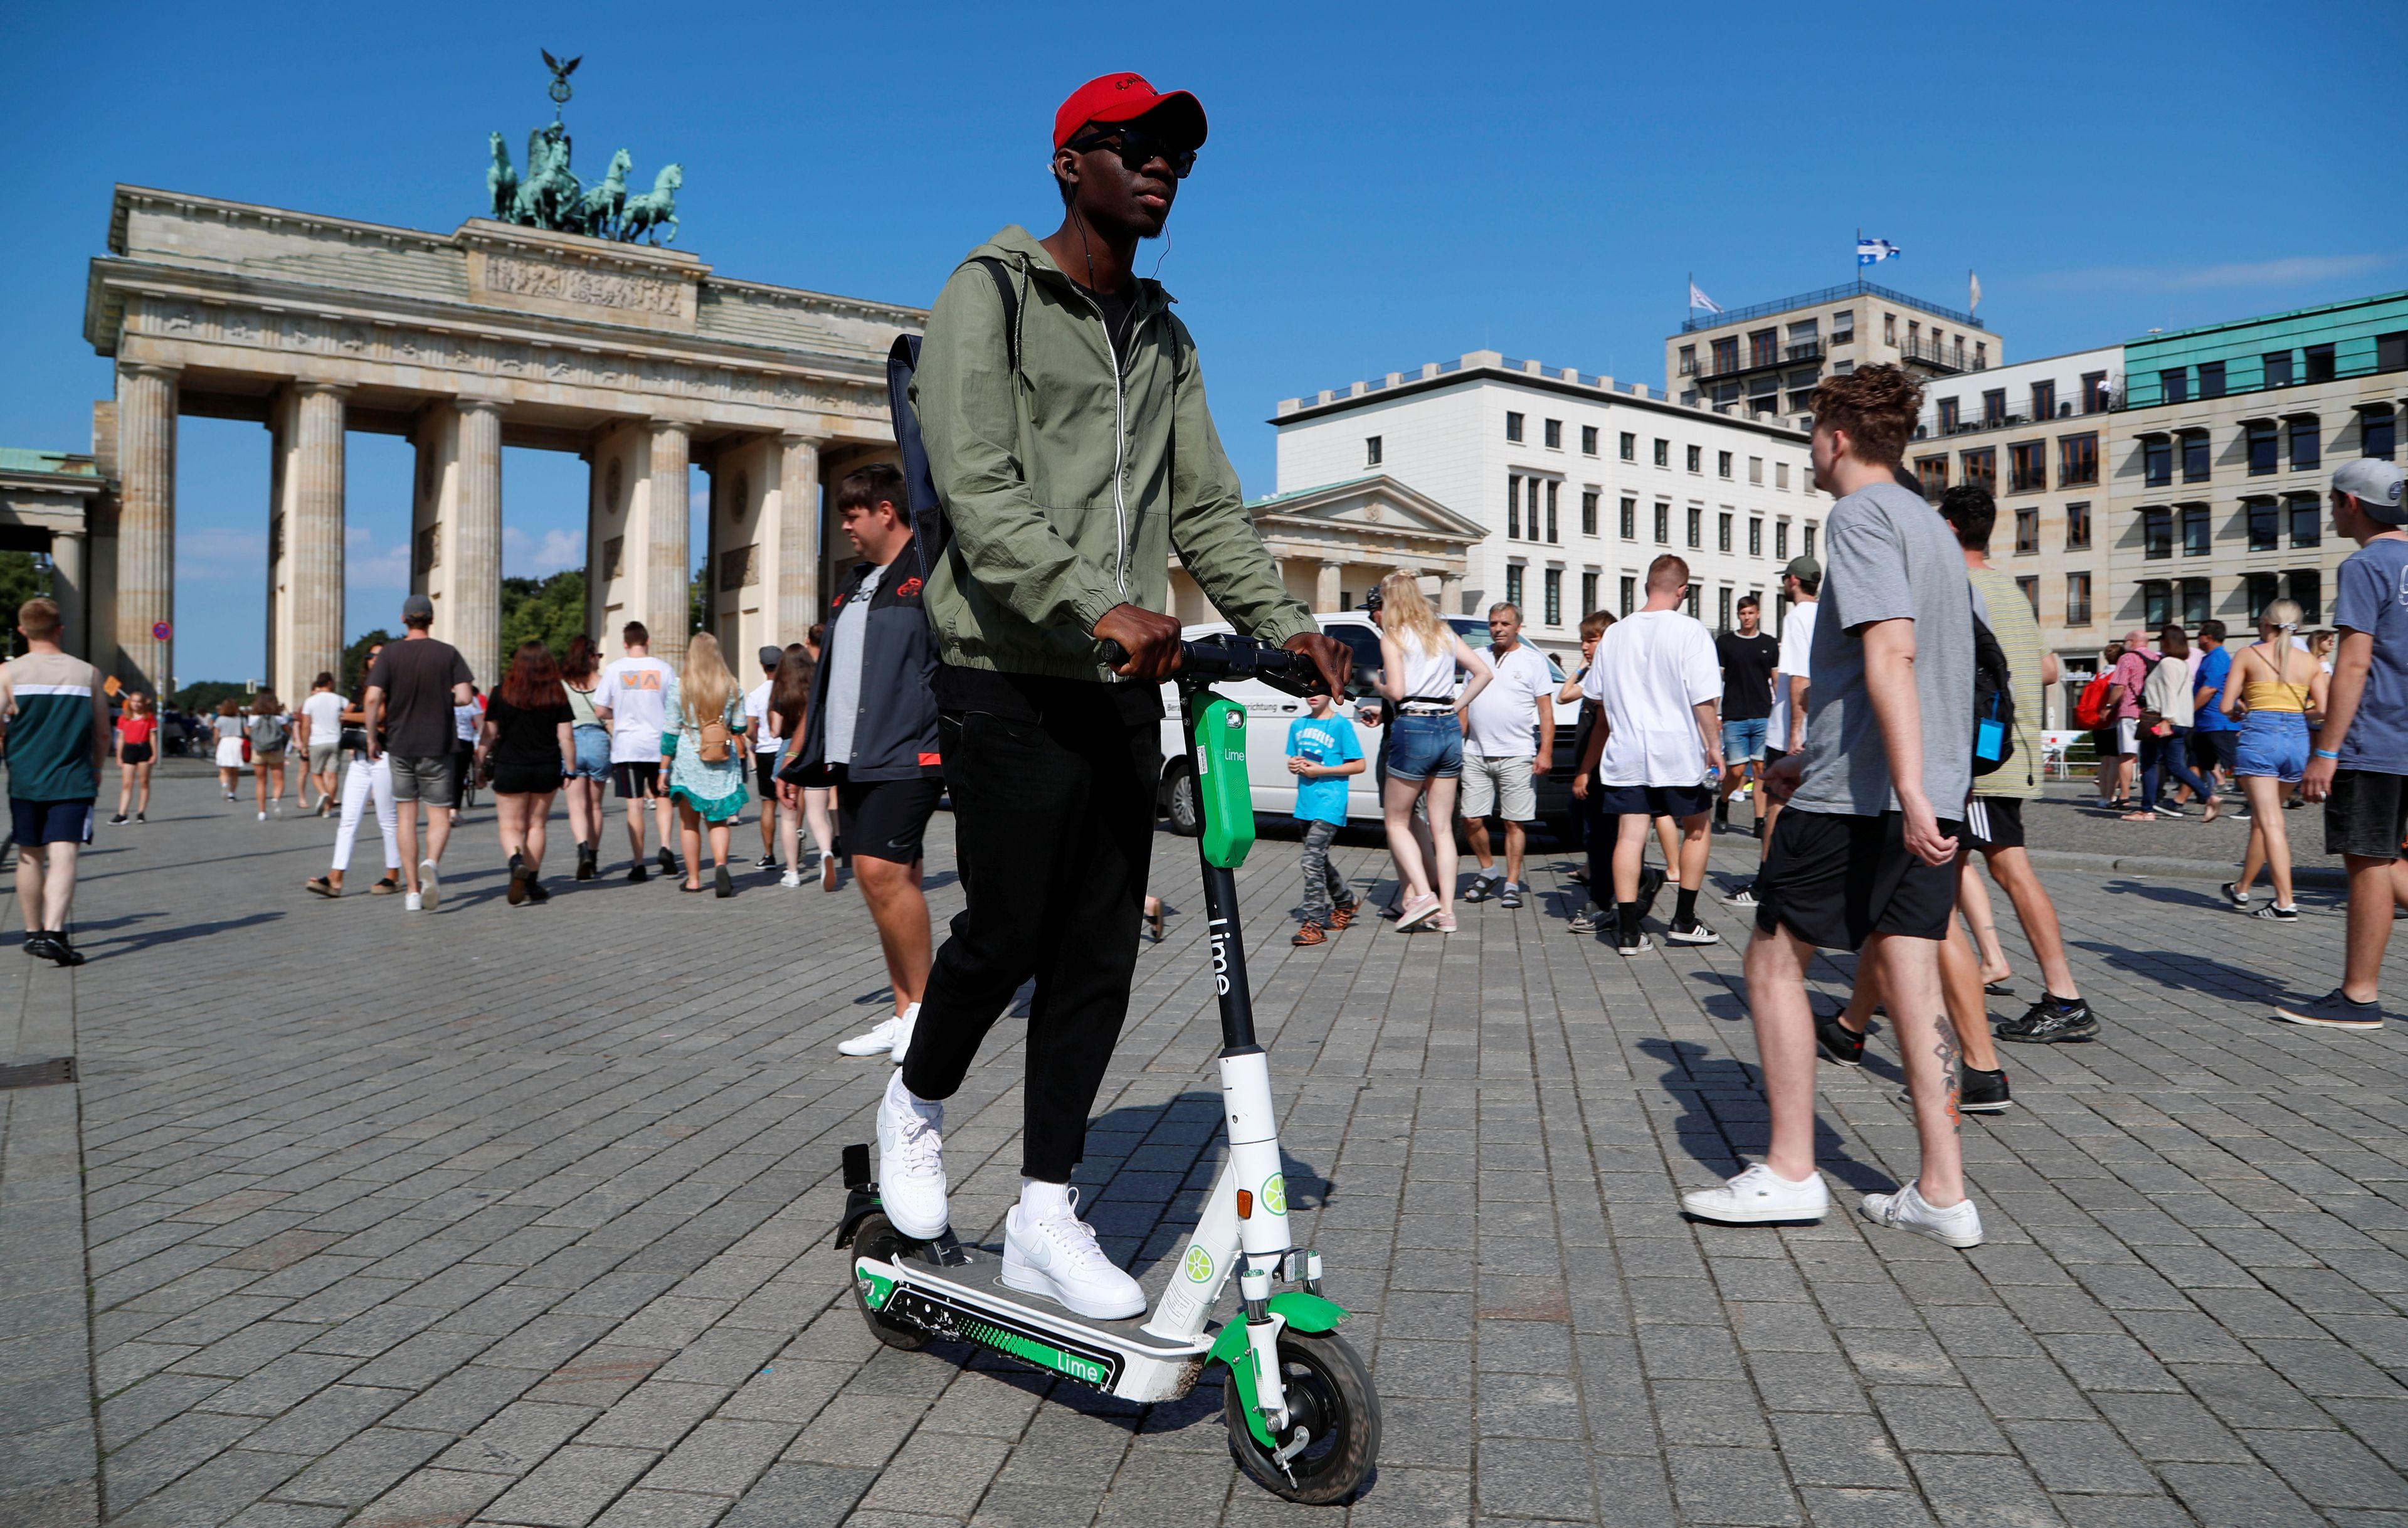 Un hombre conduce un patinete eléctrico compartido enfrente de la Puerta de Brandemburgo, en Berlín, Alemania.